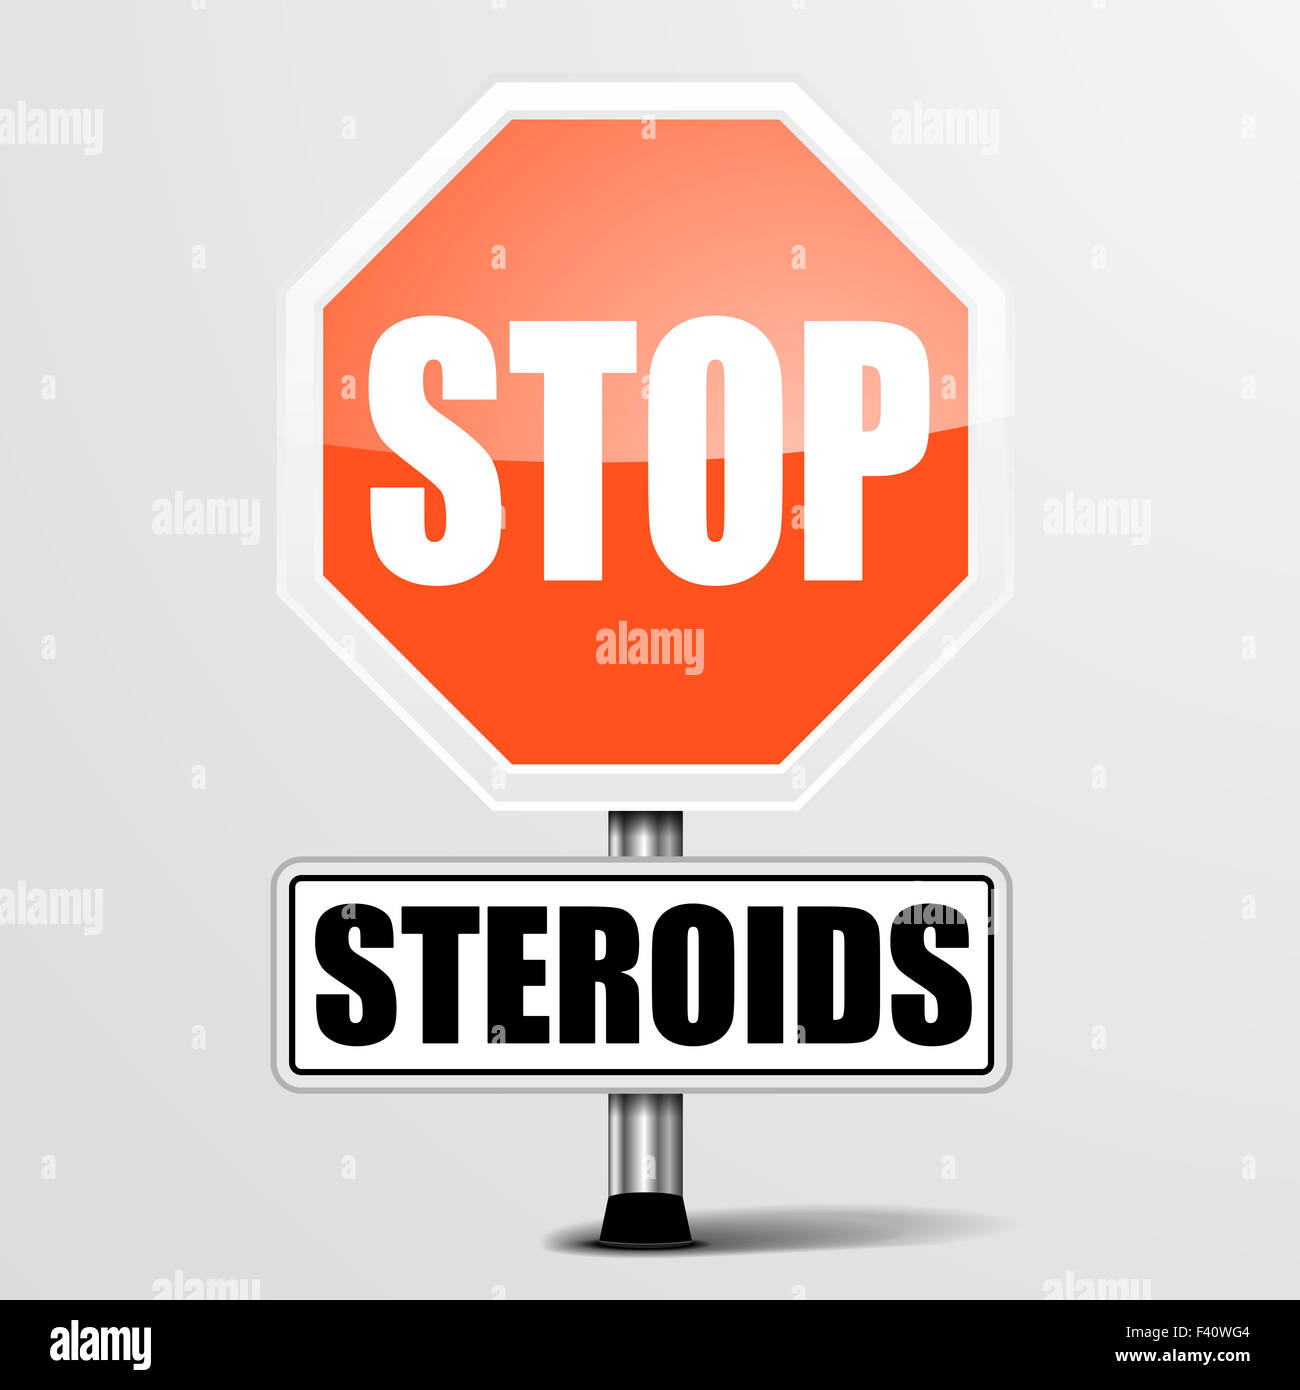 Motivi validi per evitare la steroidi inalatori